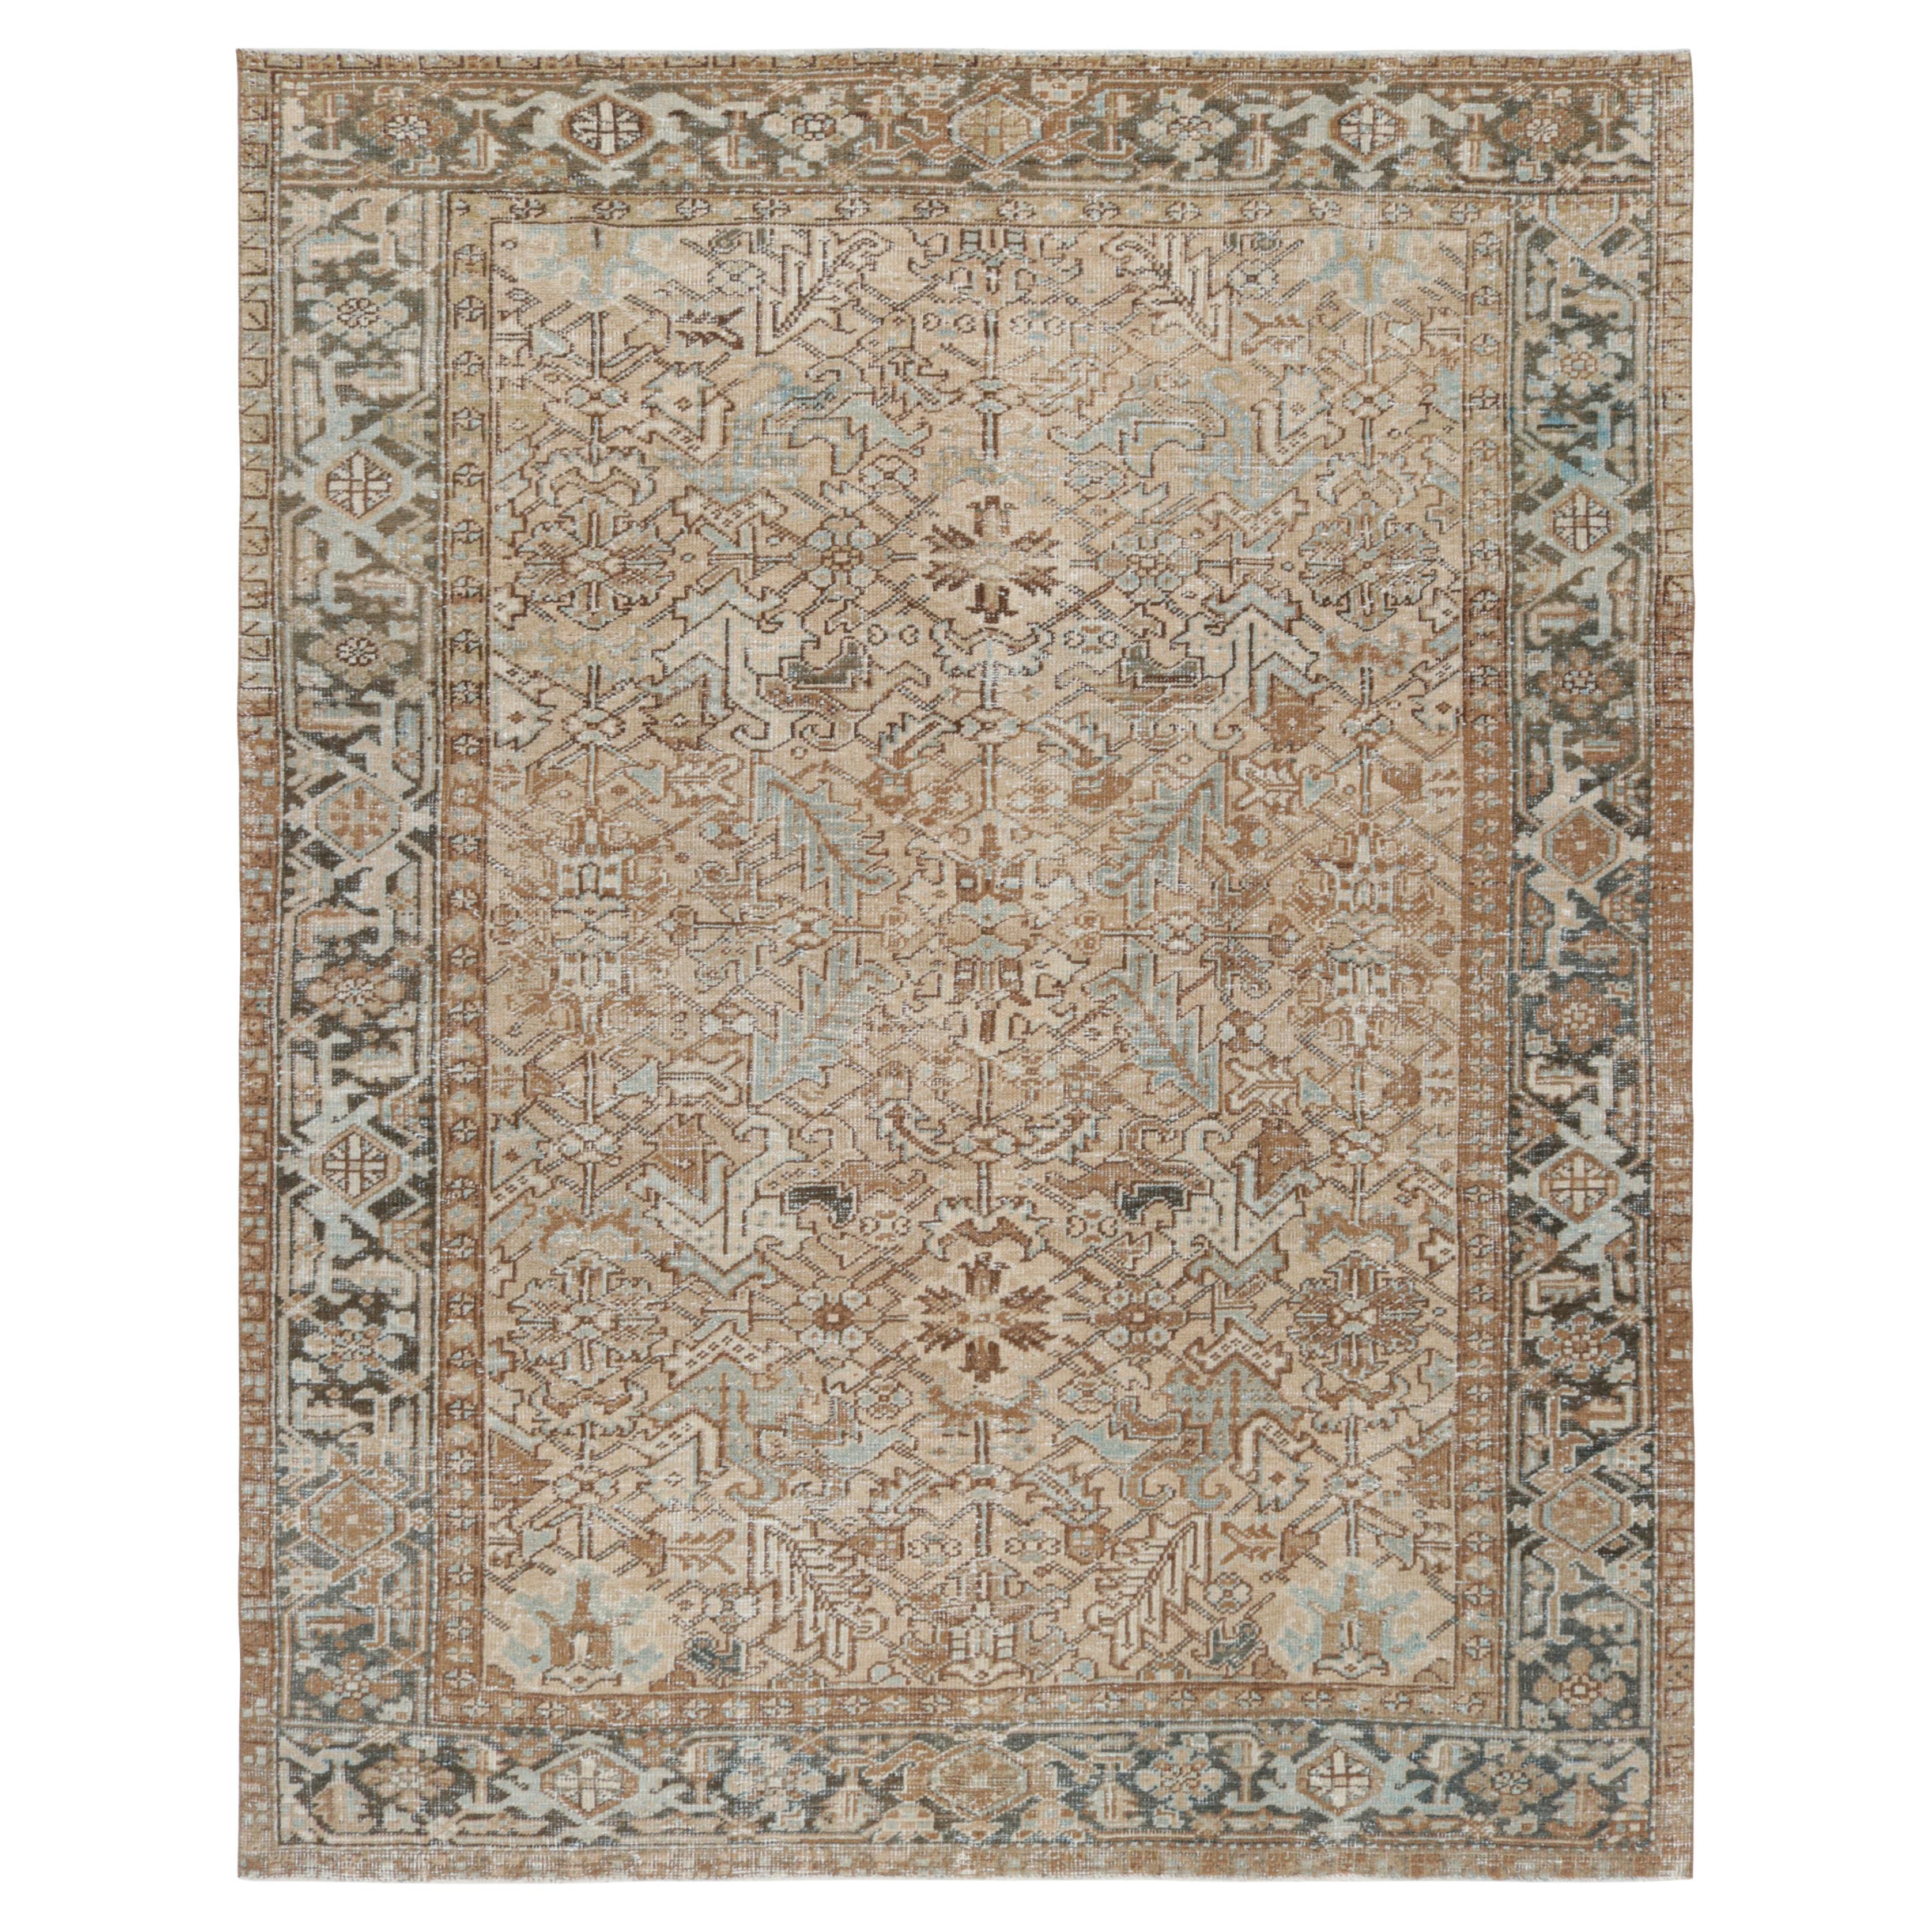 Türkischer Teppich in Beige-Braun und Blau mit geometrischen Mustern, von Rug & Kilim